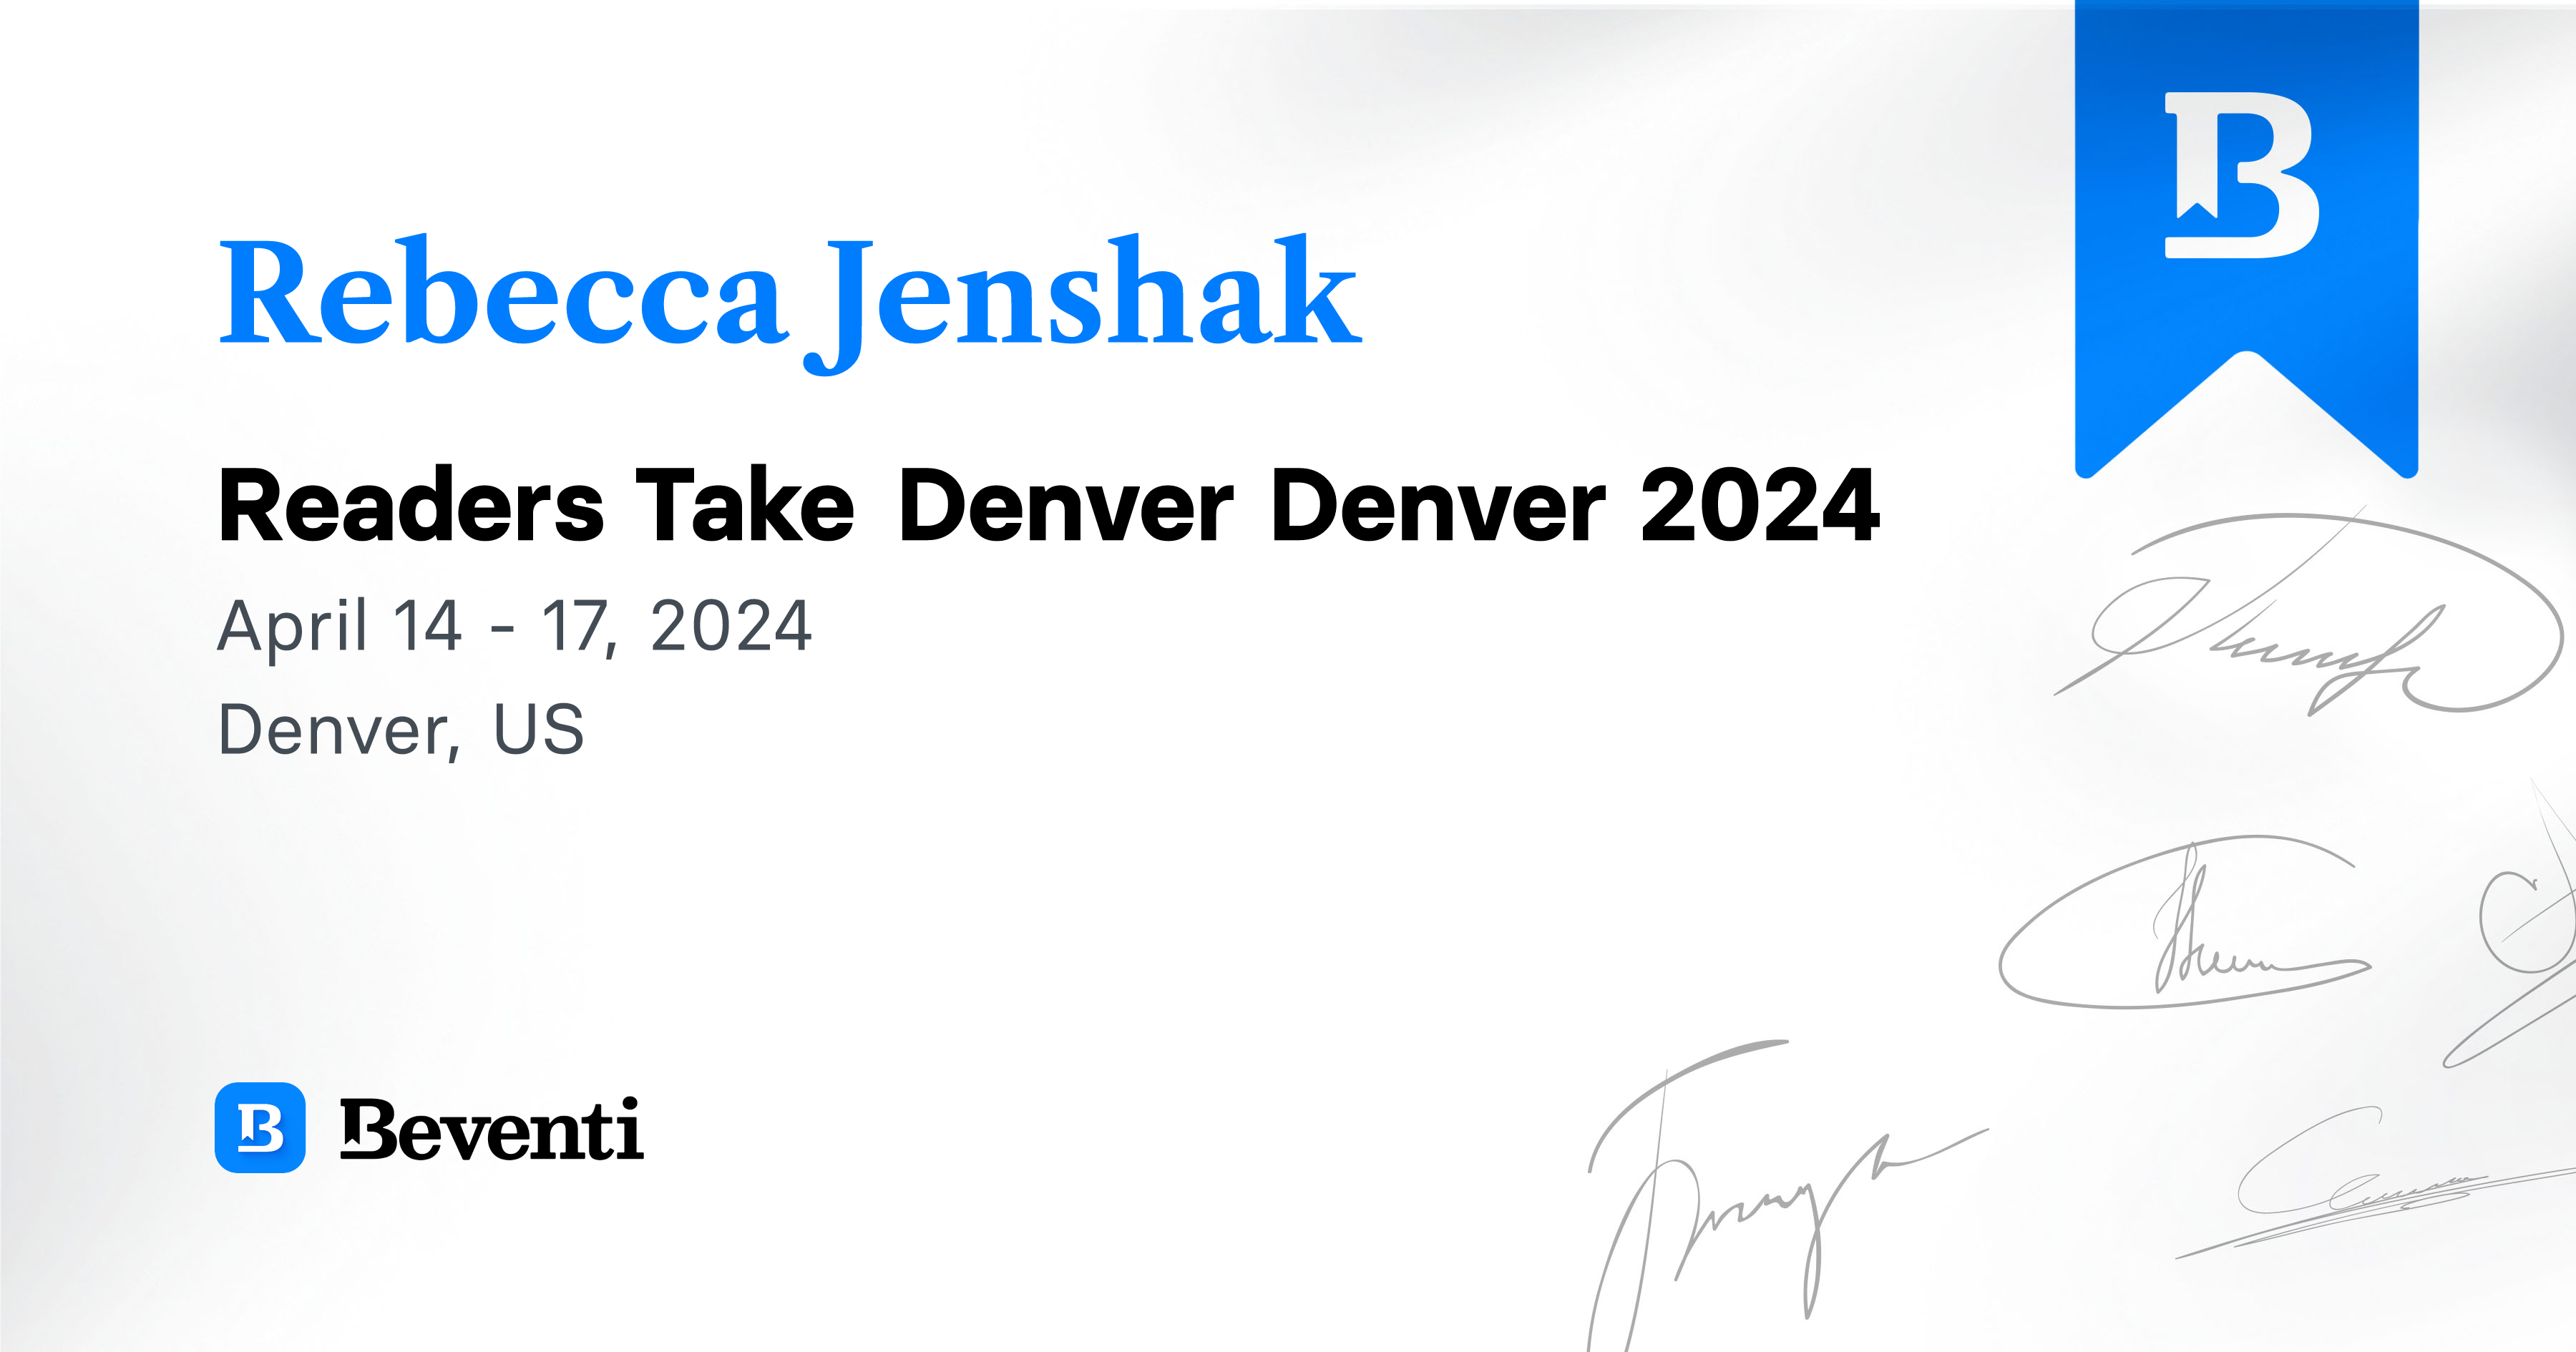 Rebecca Jenshak, Readers Take Denver Denver 2024 Beventi